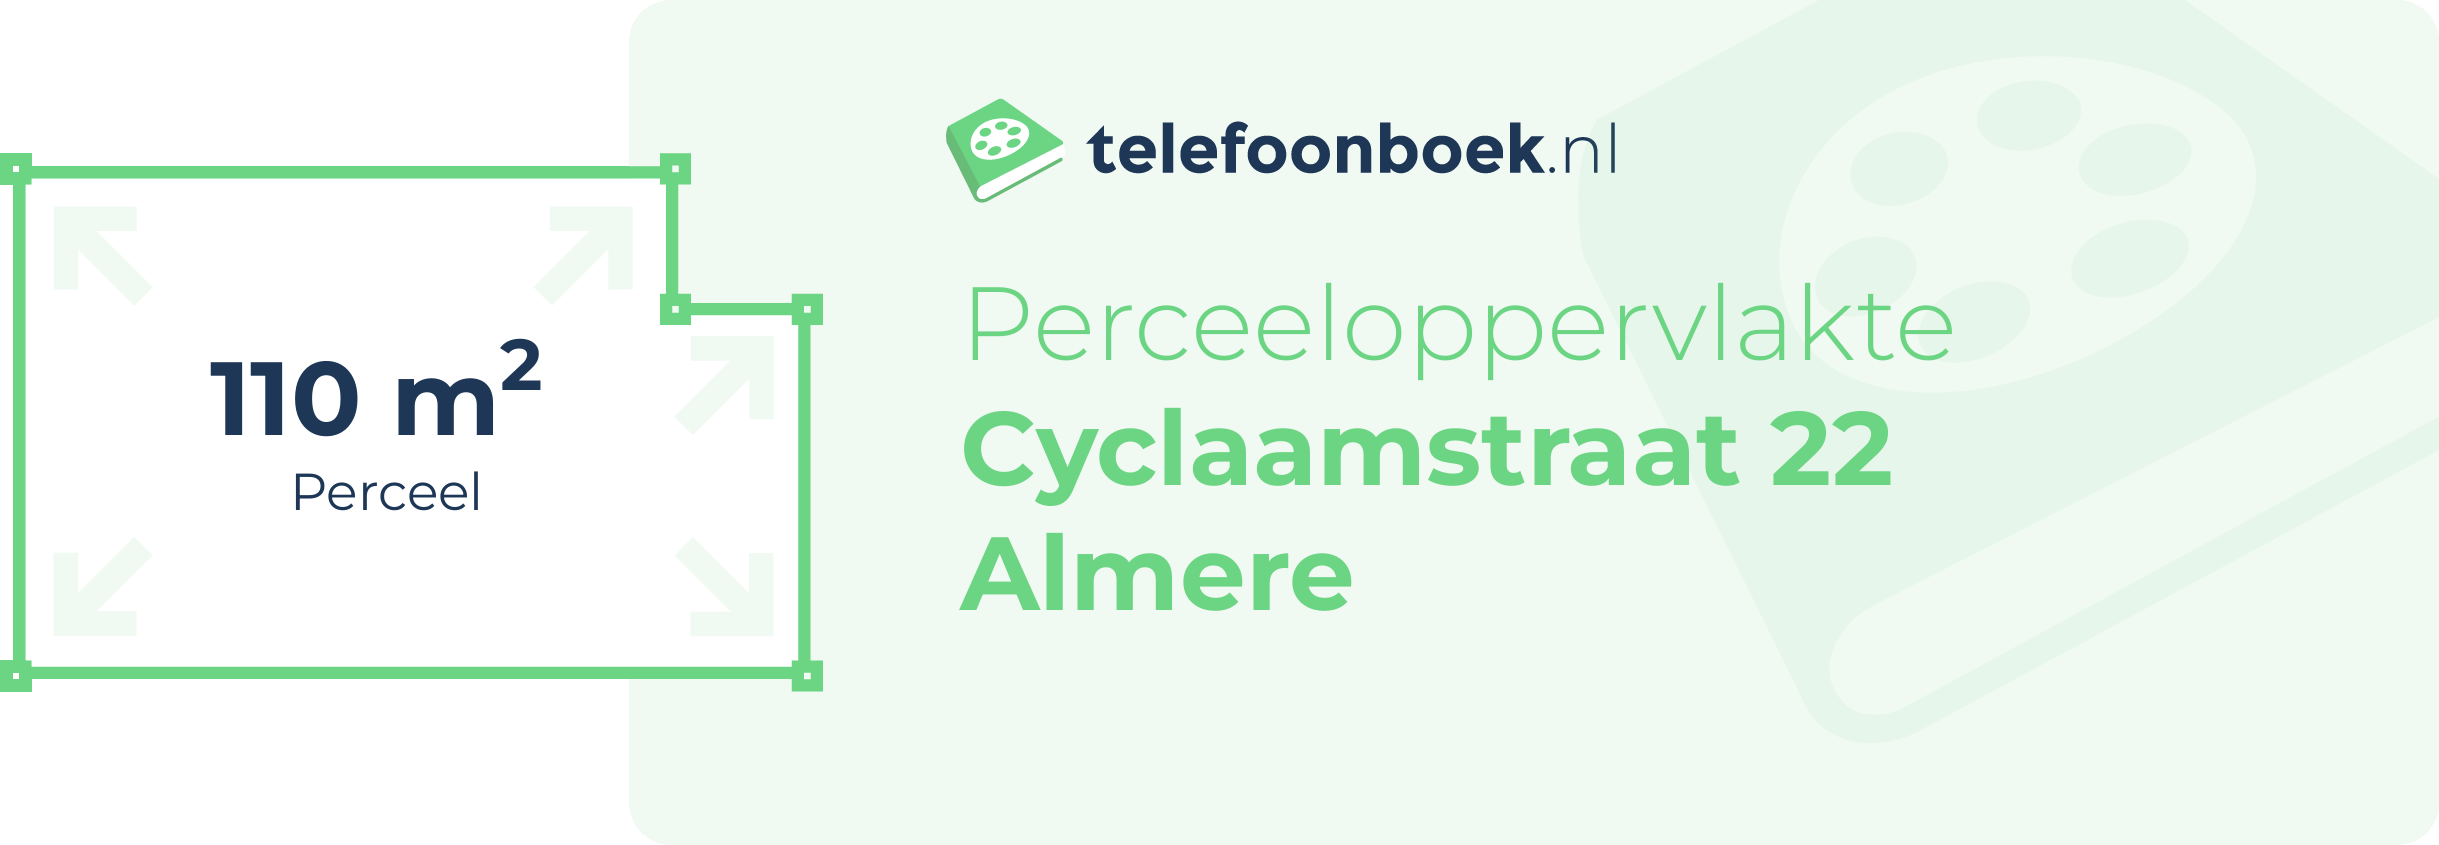 Perceeloppervlakte Cyclaamstraat 22 Almere